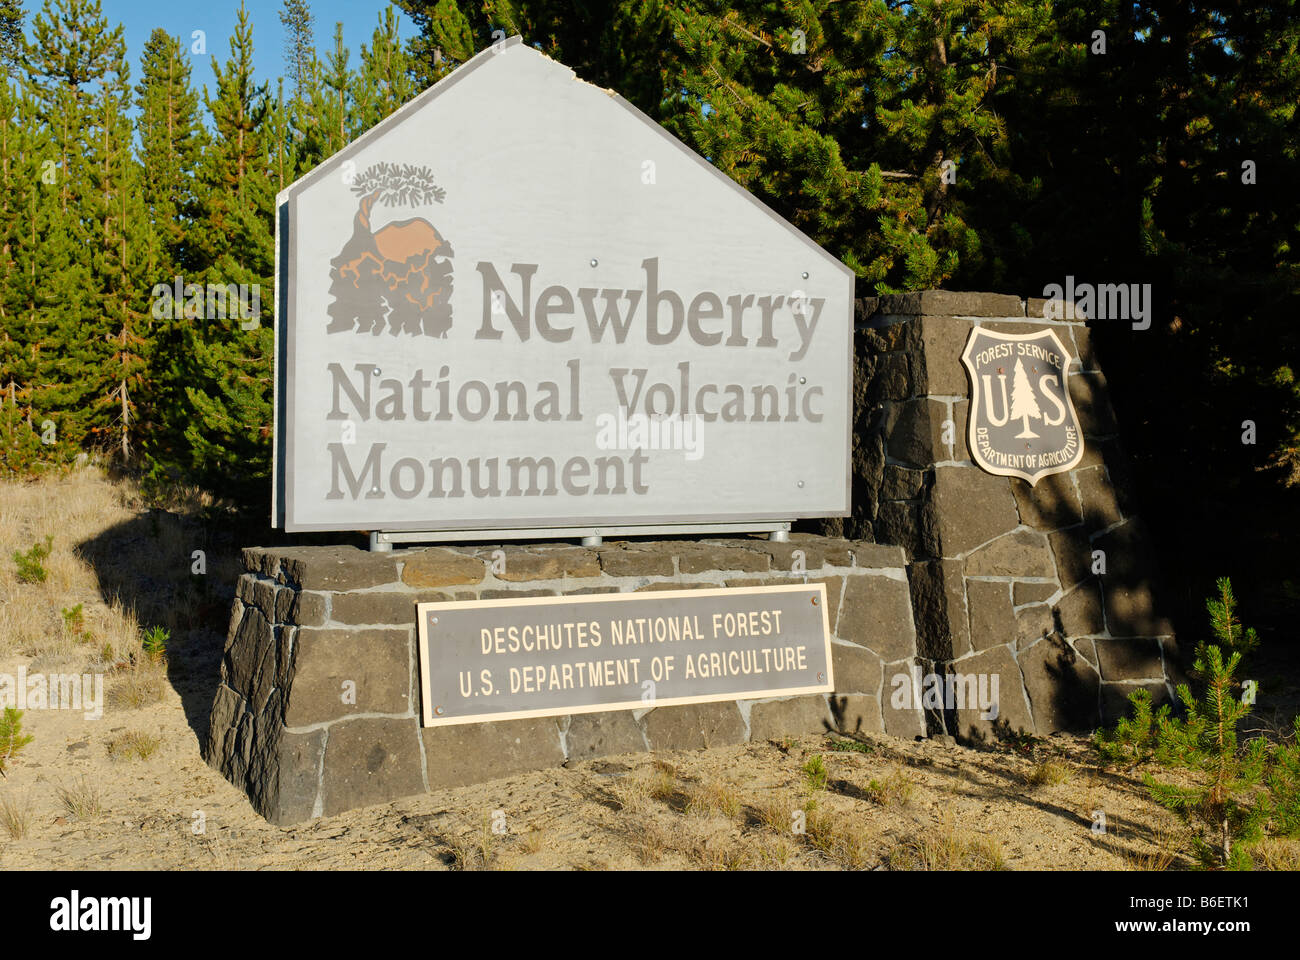 Ingresso della Newberry nazionale monumento vulcanico, Oregon, Stati Uniti d'America Foto Stock